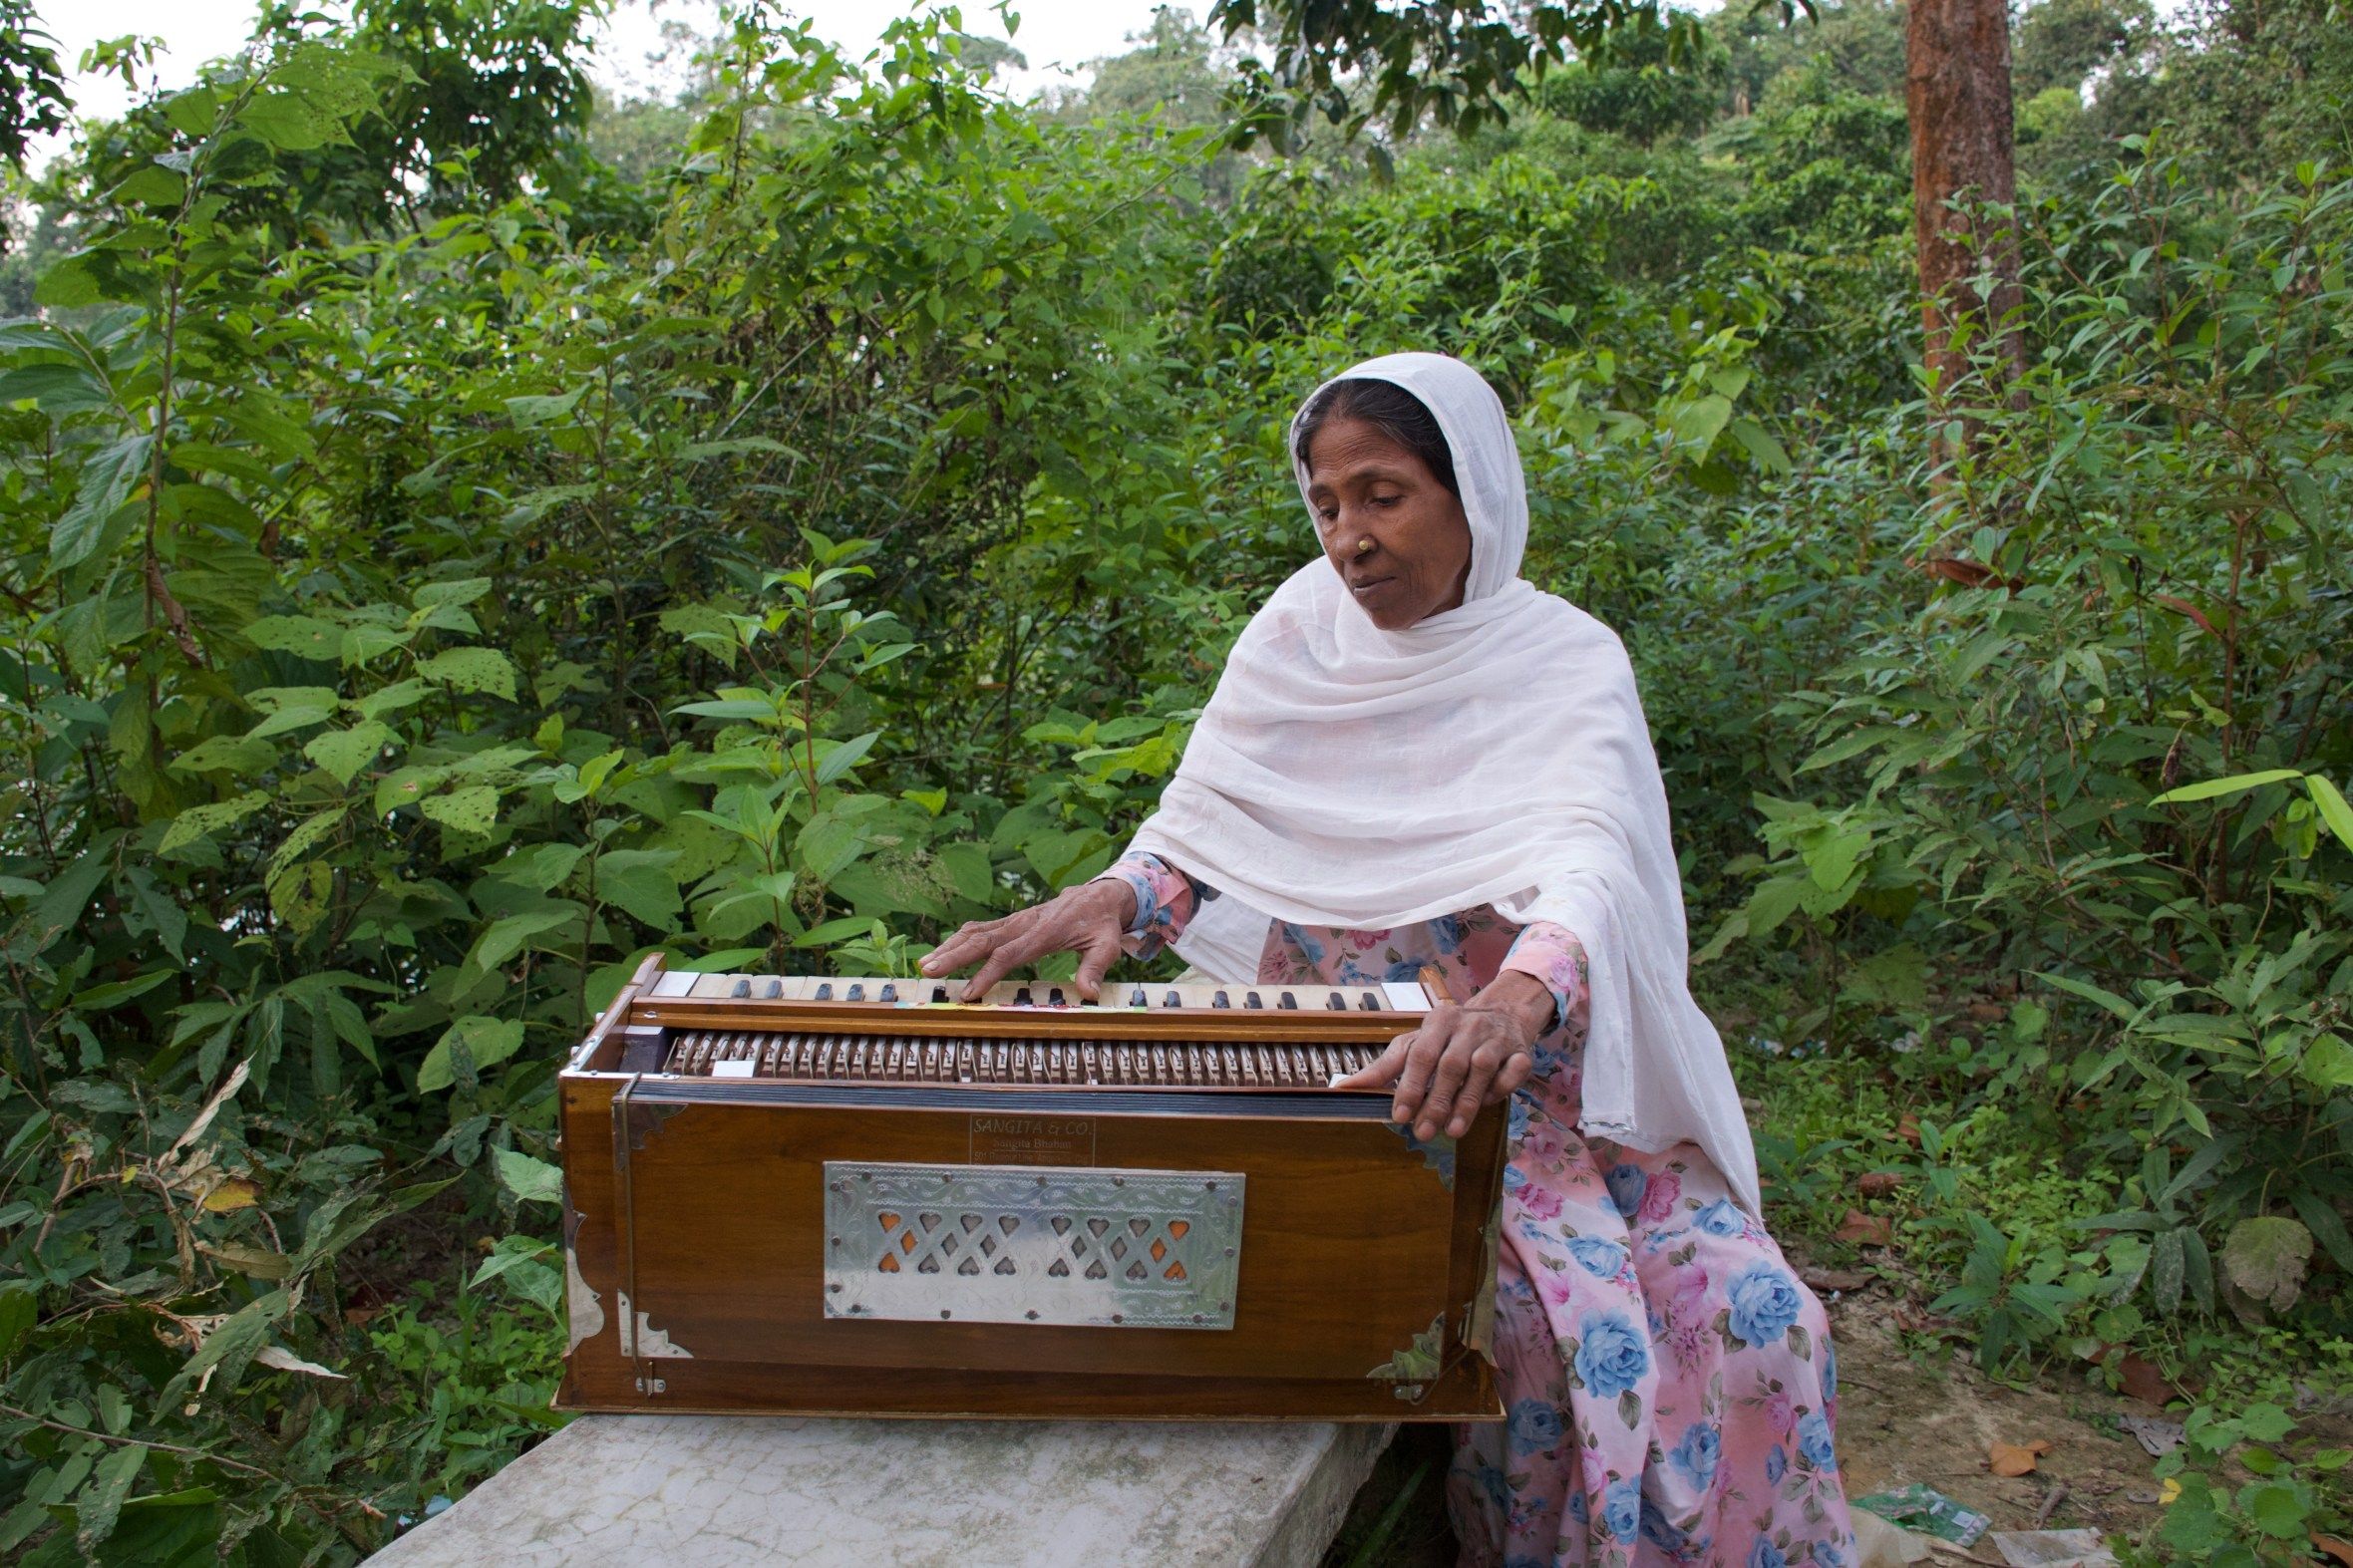 Image by Sasha Ingber/Music in Exile. Bangladesh, 2019.